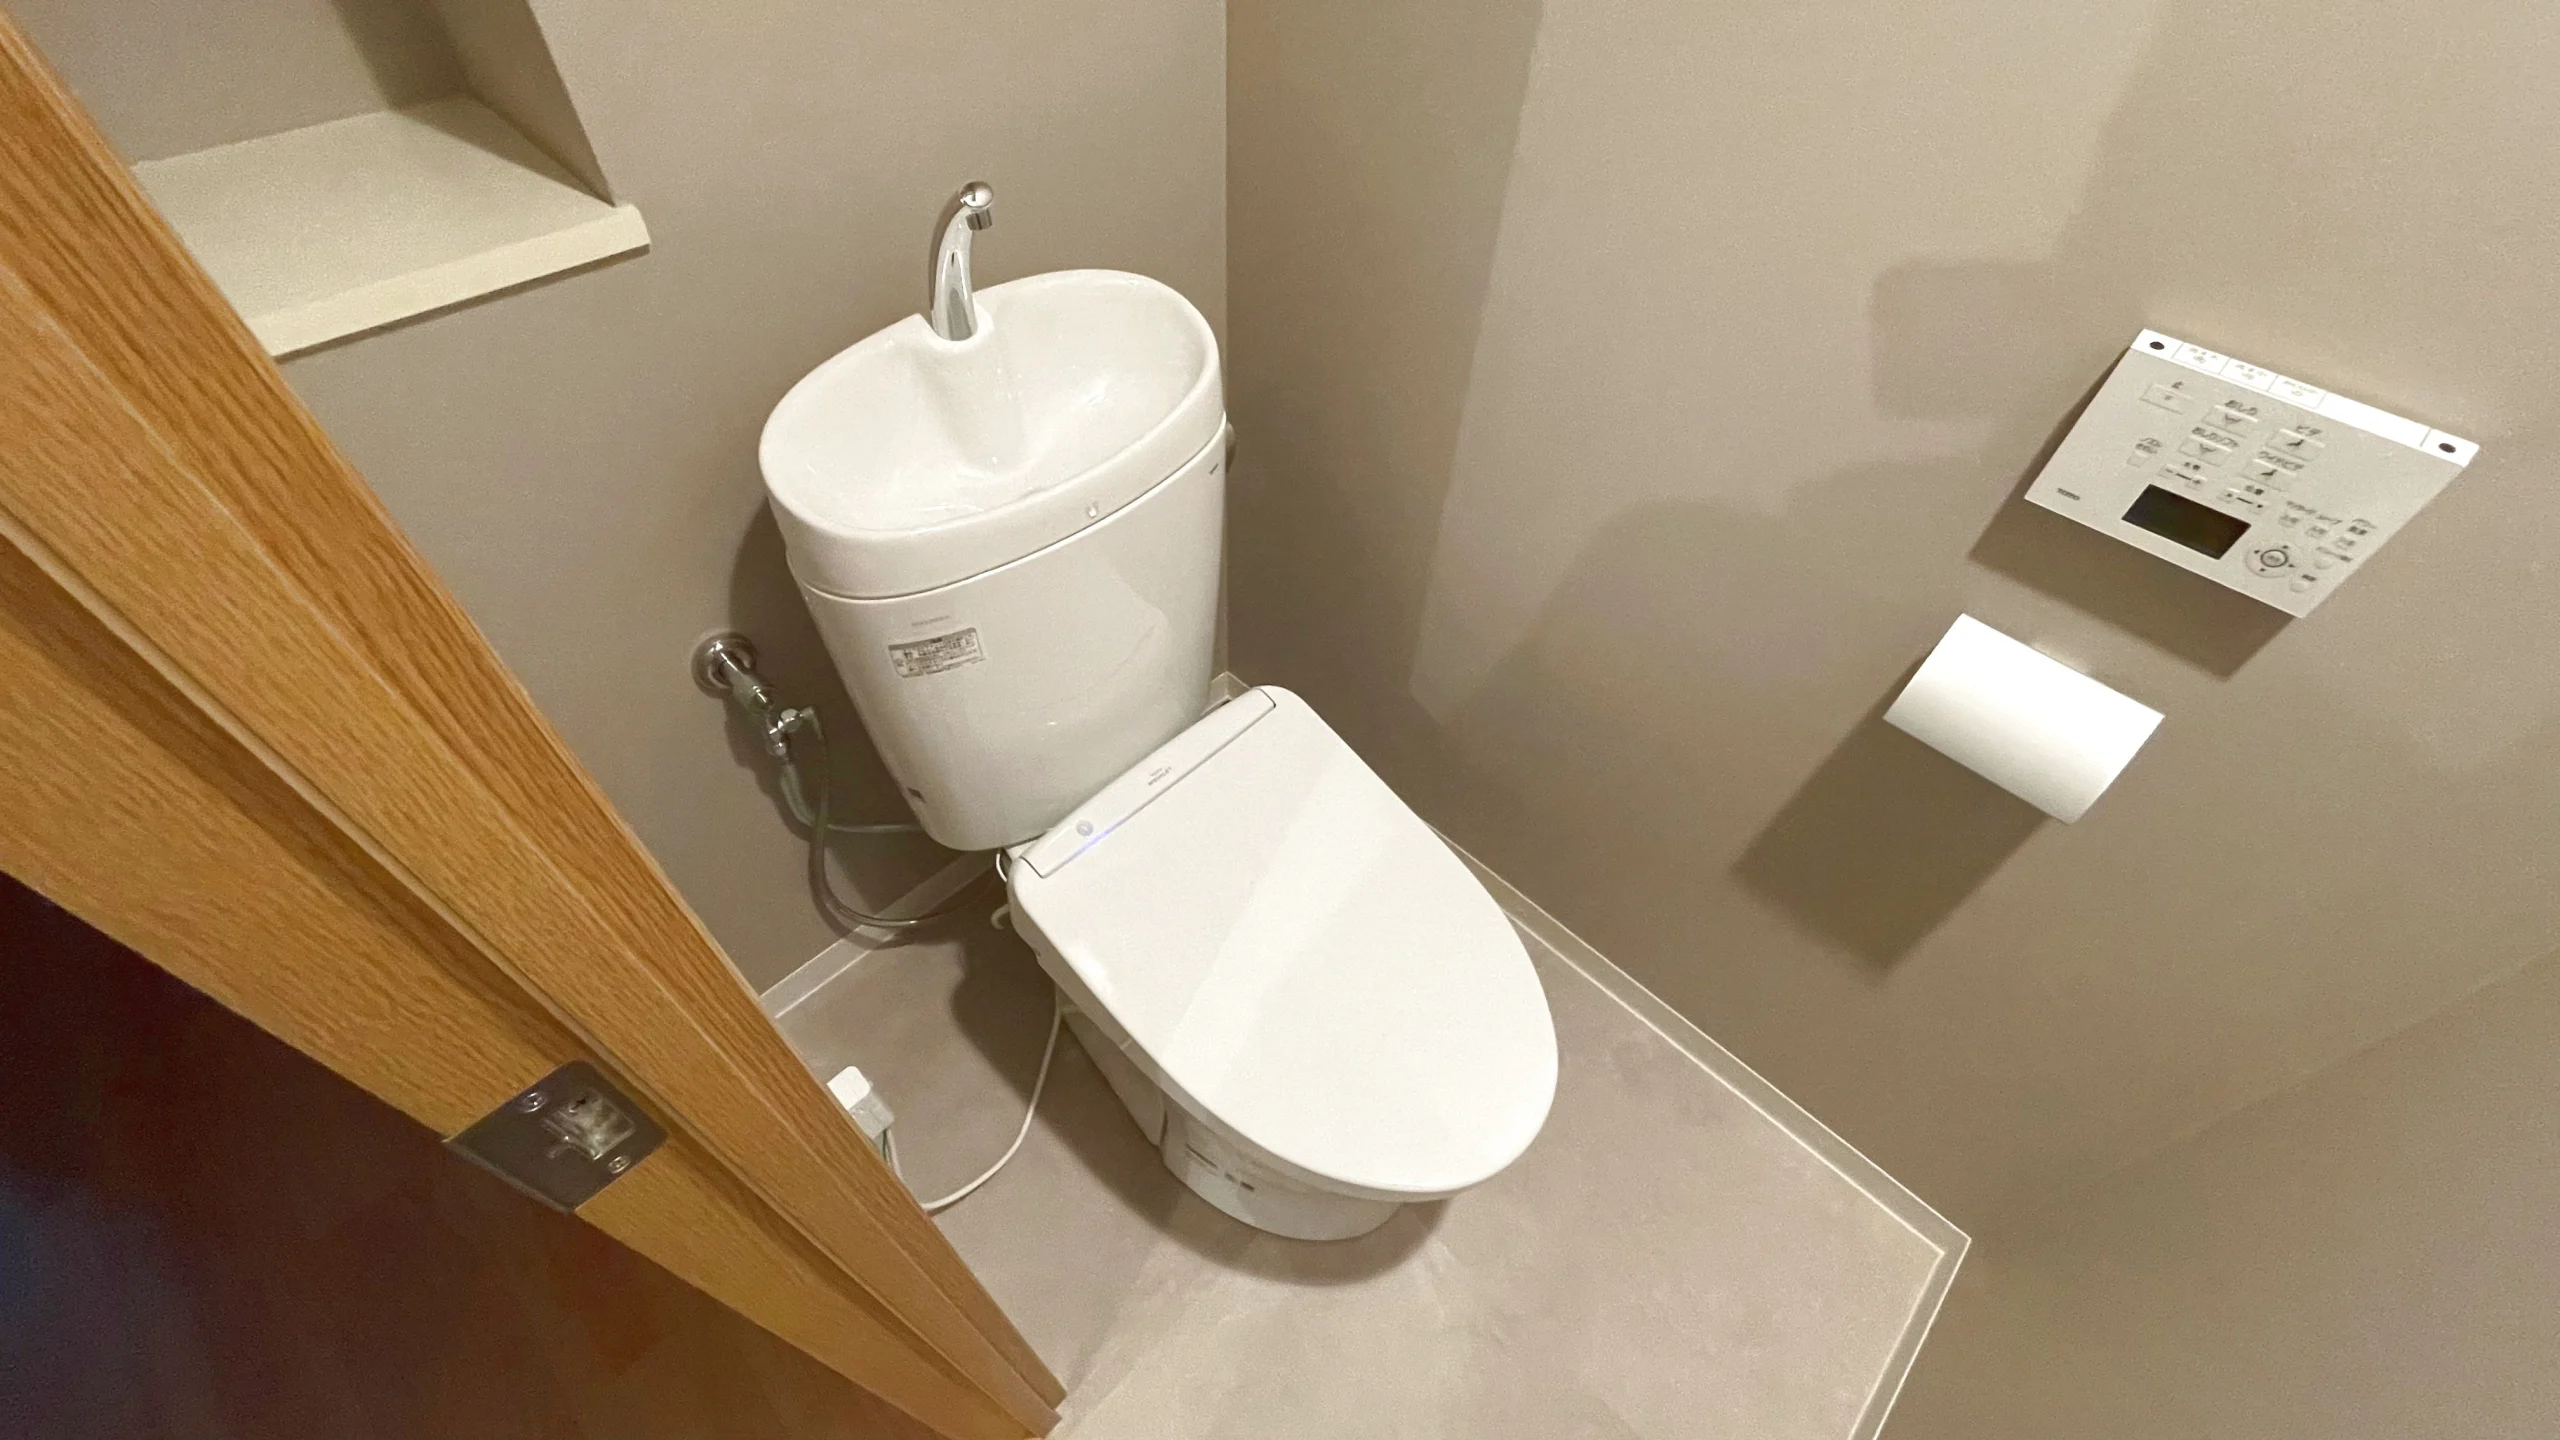 TOTO「ピュアレスト」でトイレをリフォームした事例！床はフロアタイル使用